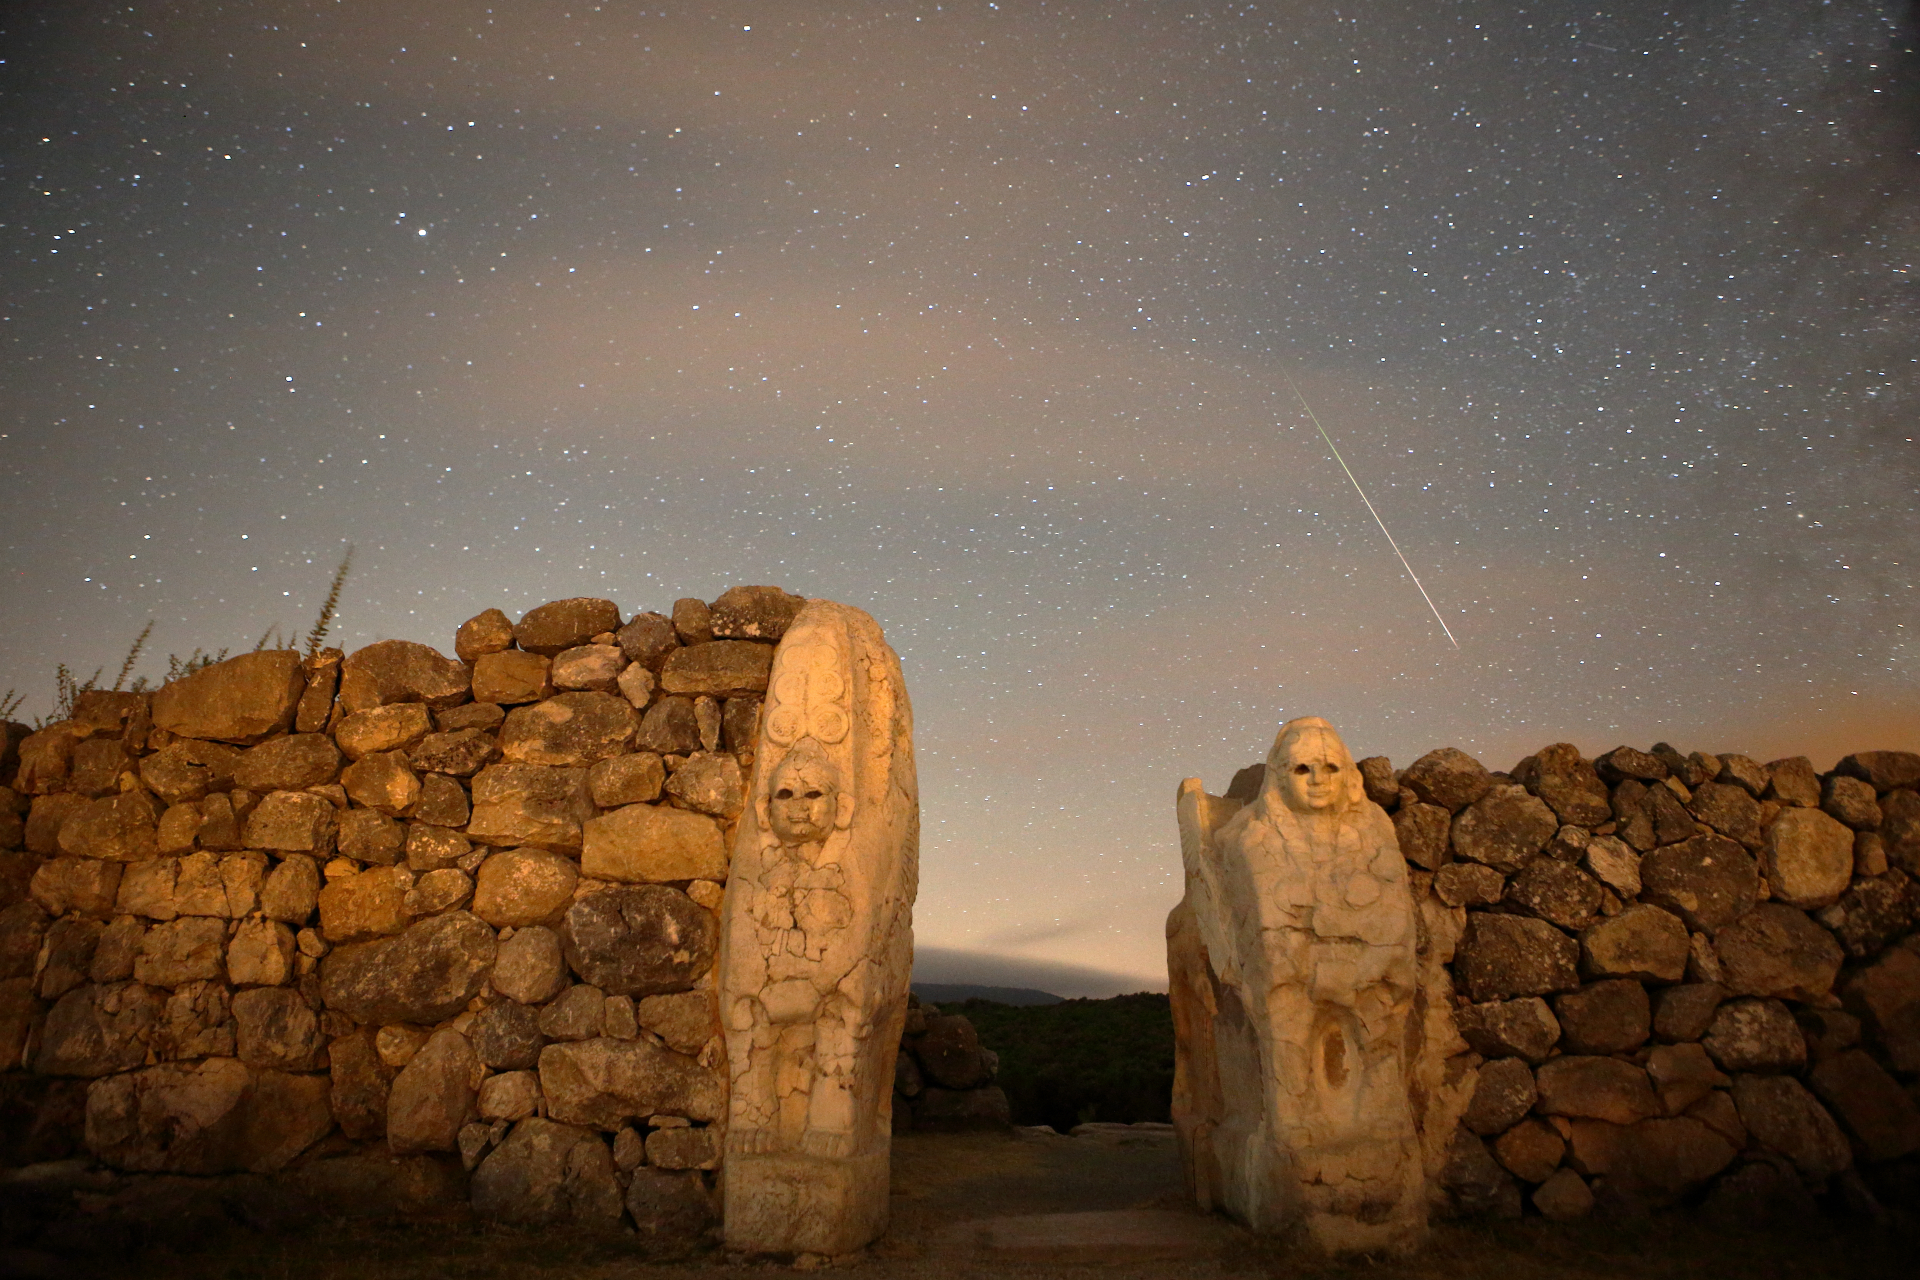 Una scia di meteoriti prominente nel cielo sopra un muro di pietra con due figure scolpite nella roccia.